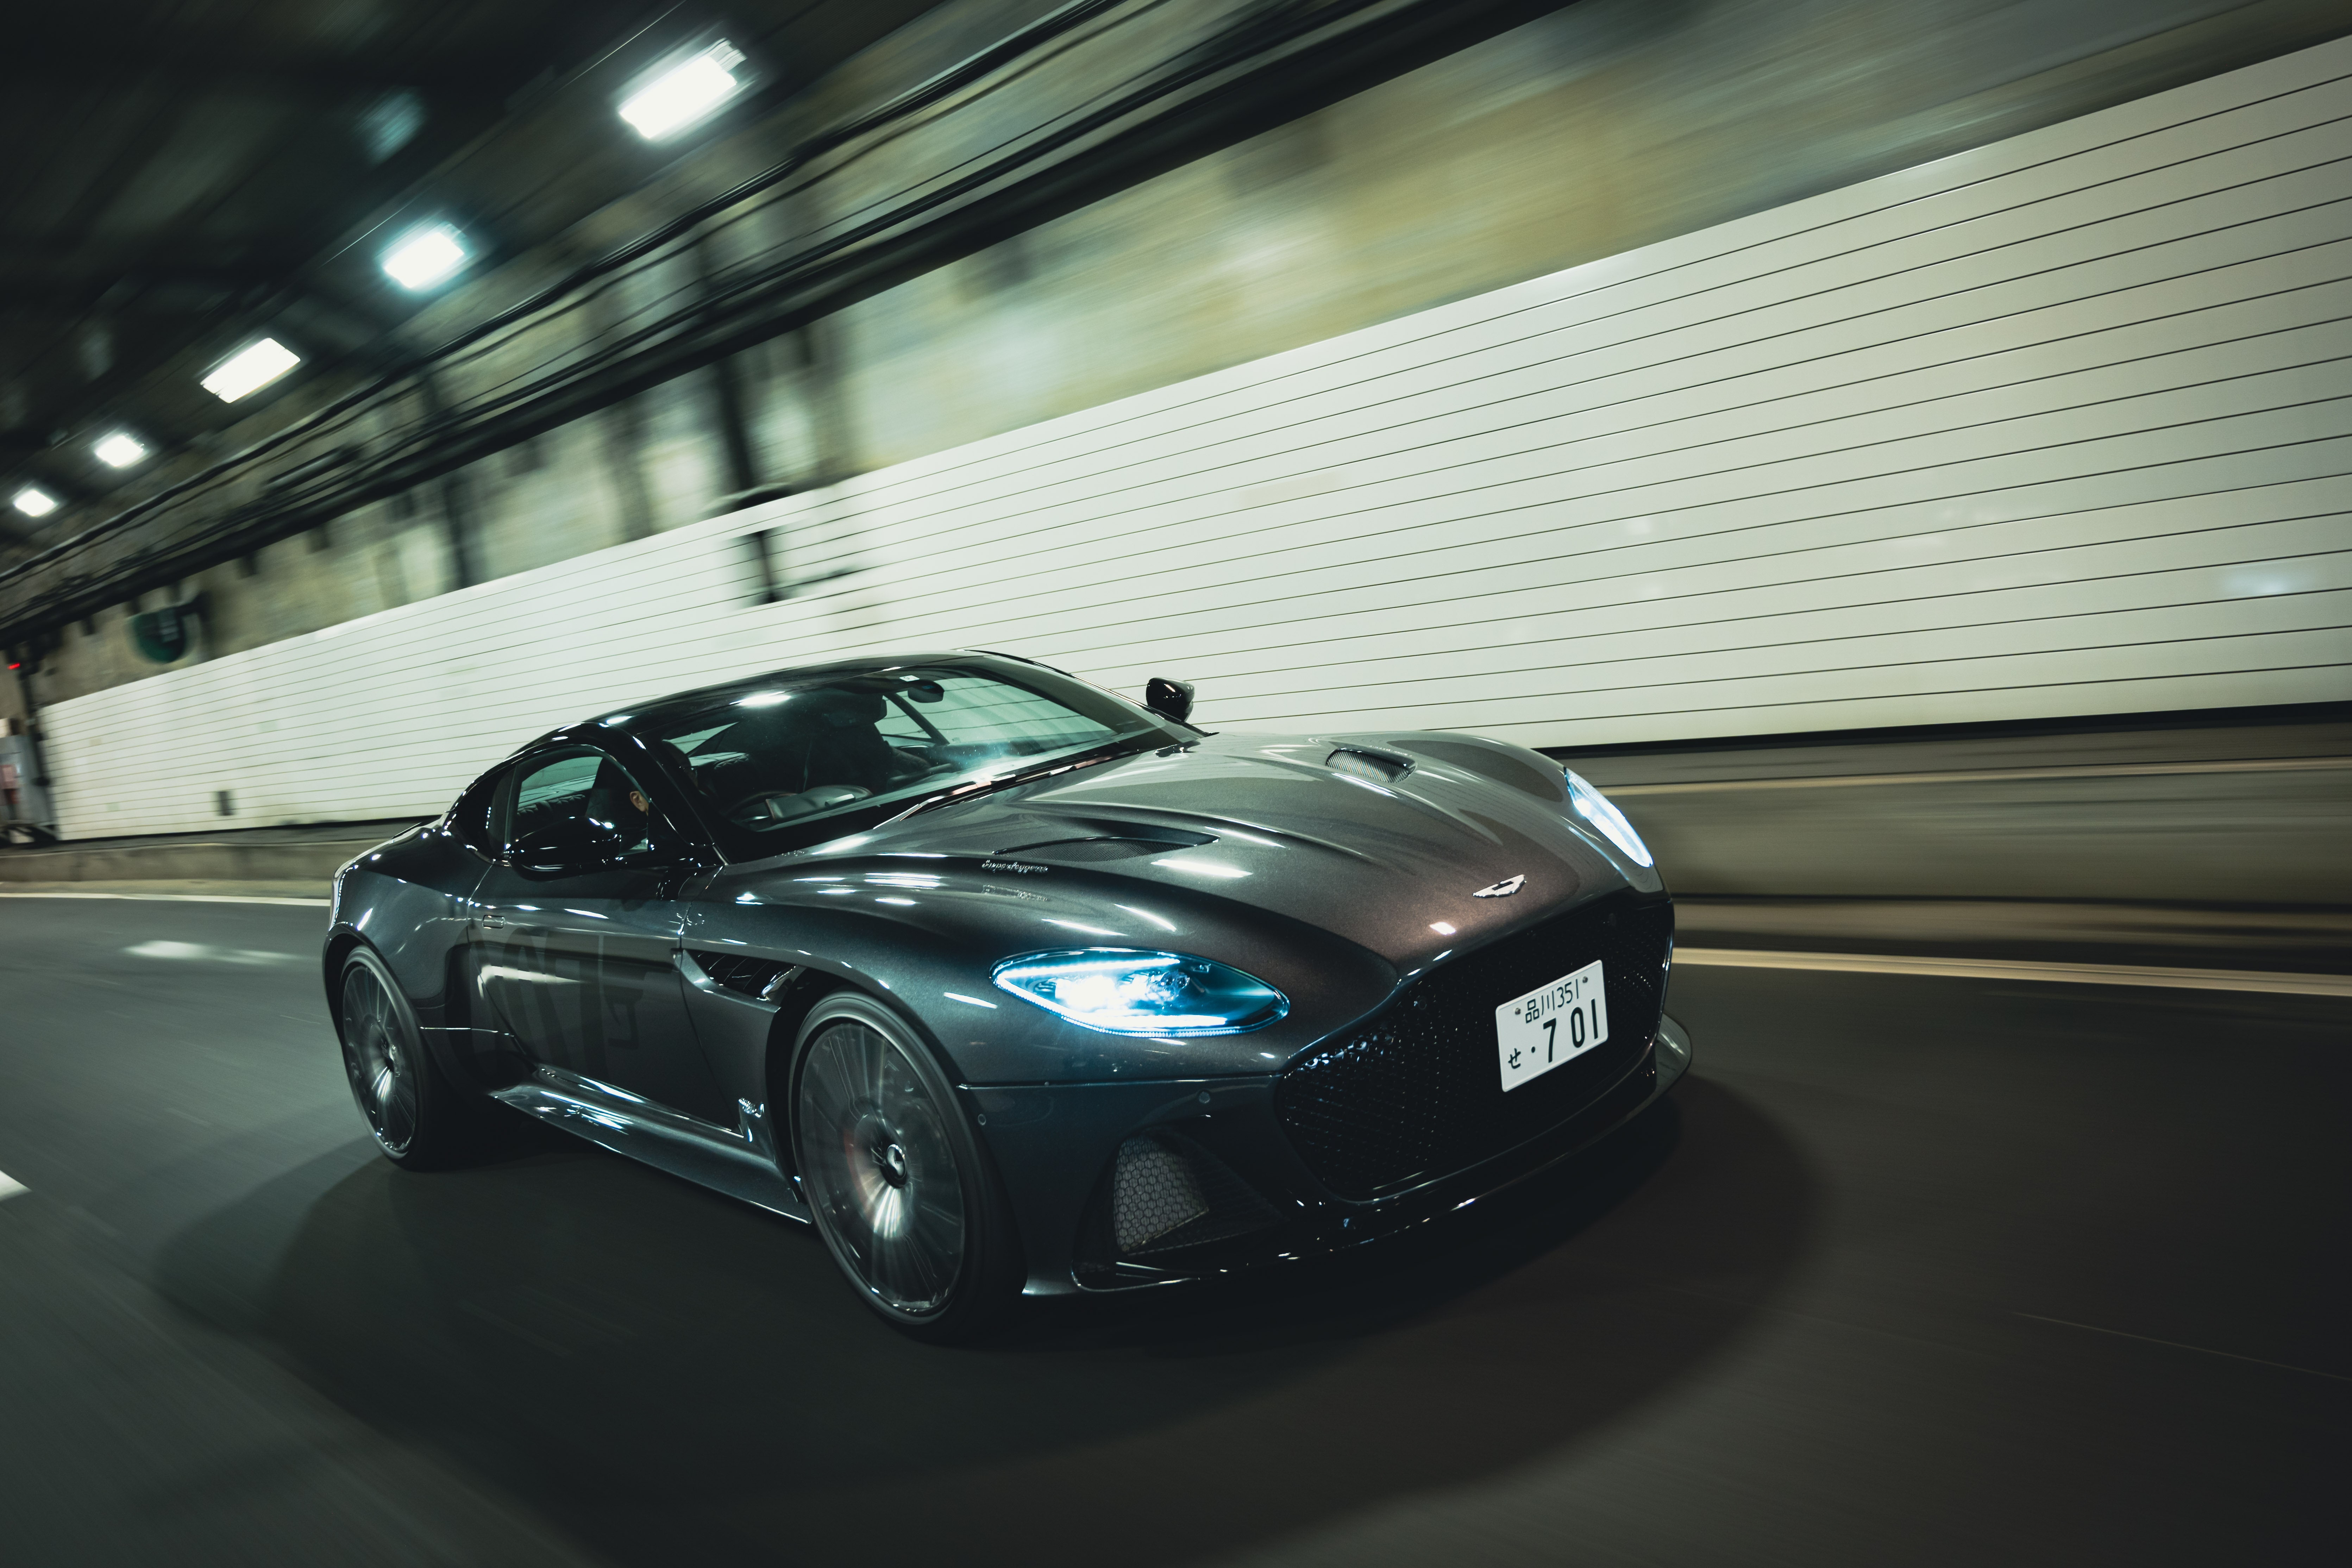 Descarga gratuita de fondo de pantalla para móvil de Aston Martin, Superdeportivo, Vehículos, Aston Martin Dbs Superleggera.